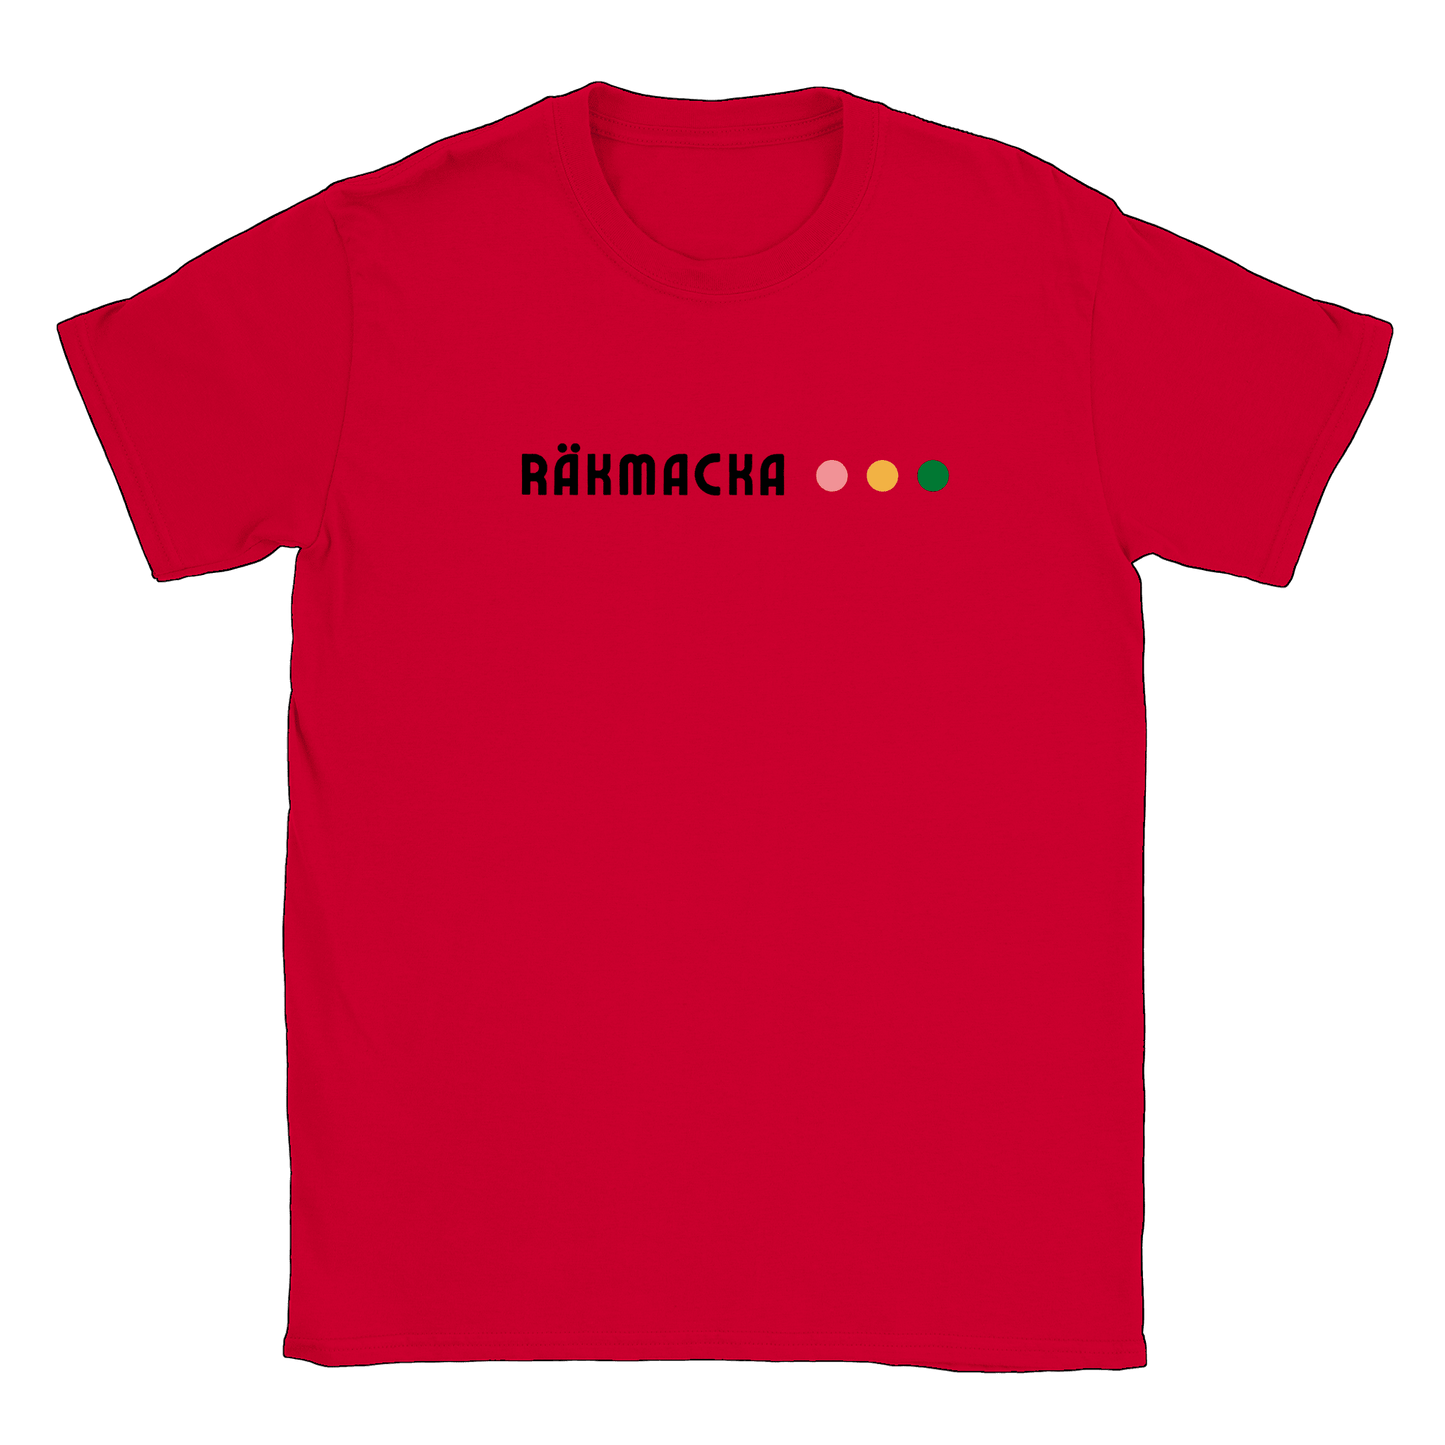 Räkmacka - T-shirt Röd